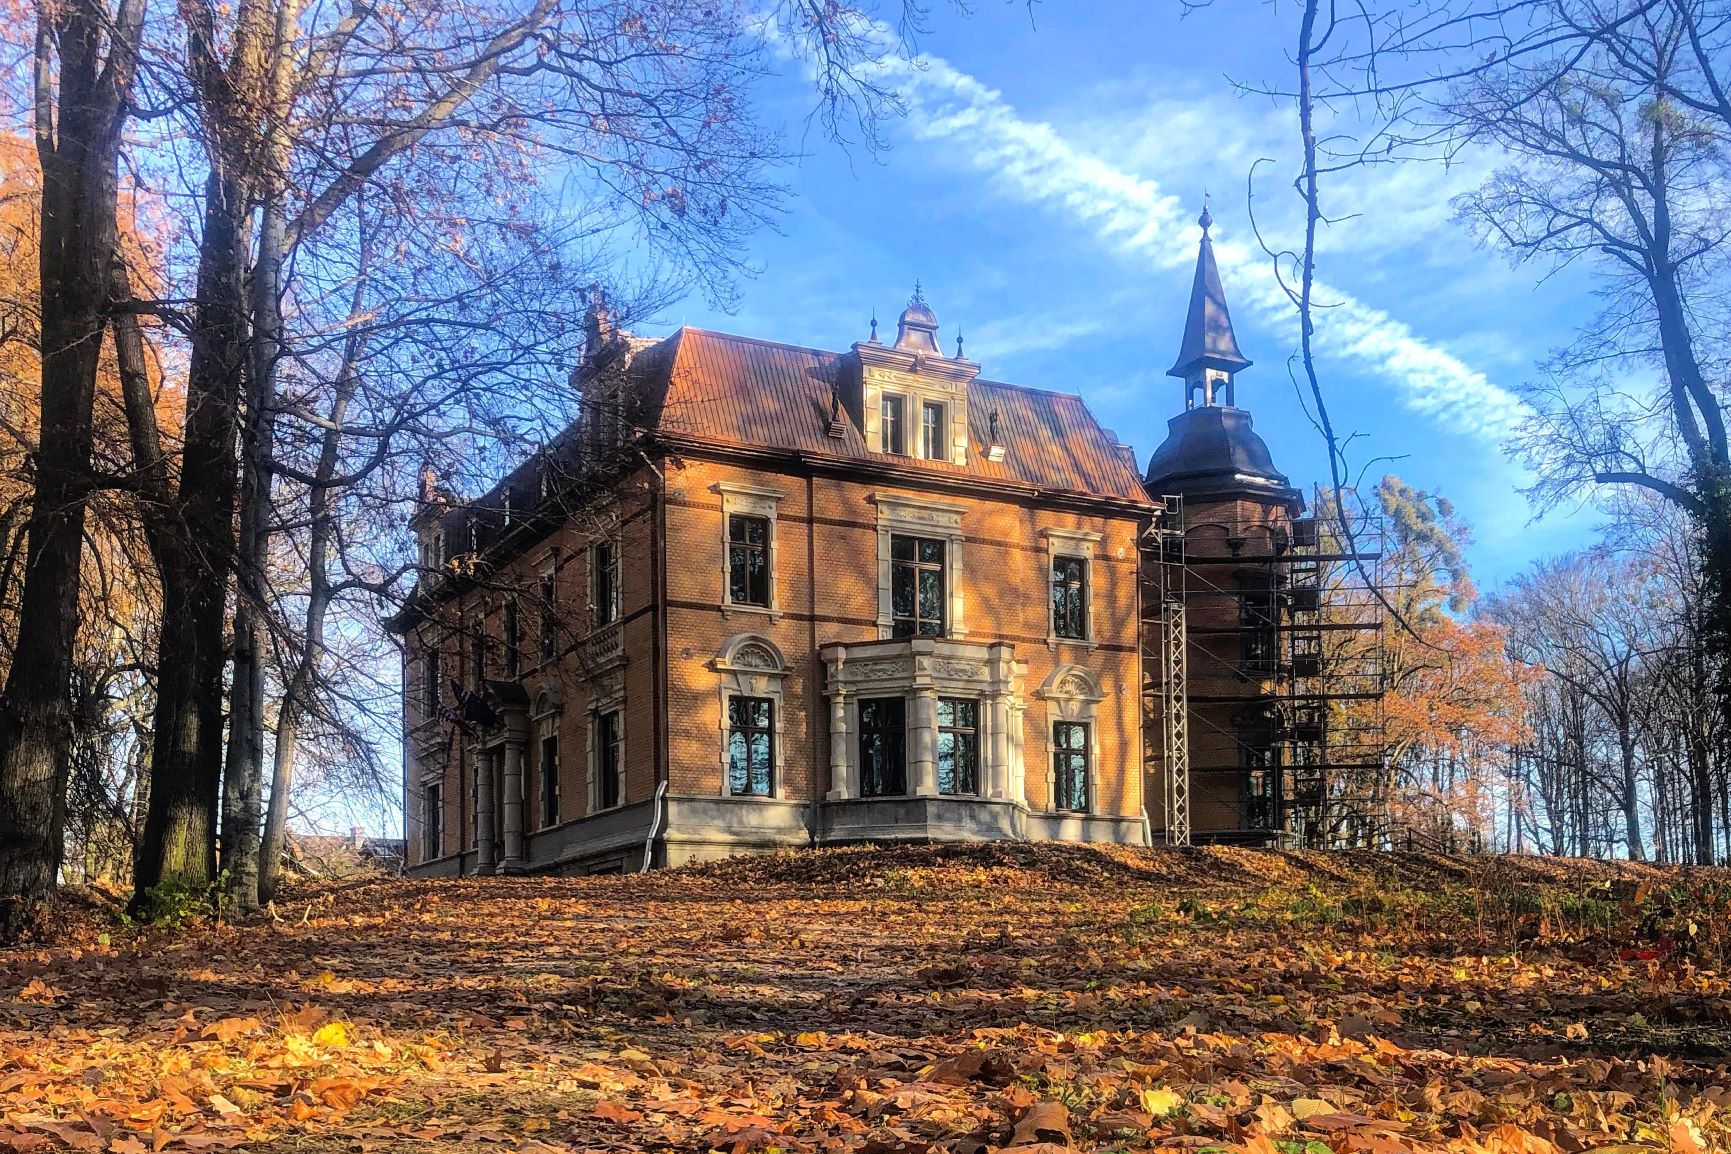 Pałac w Rzuchowie podczas jesieni. Wokół budynku leżą liście ze stojących obok drzew. Niebo z chmurami